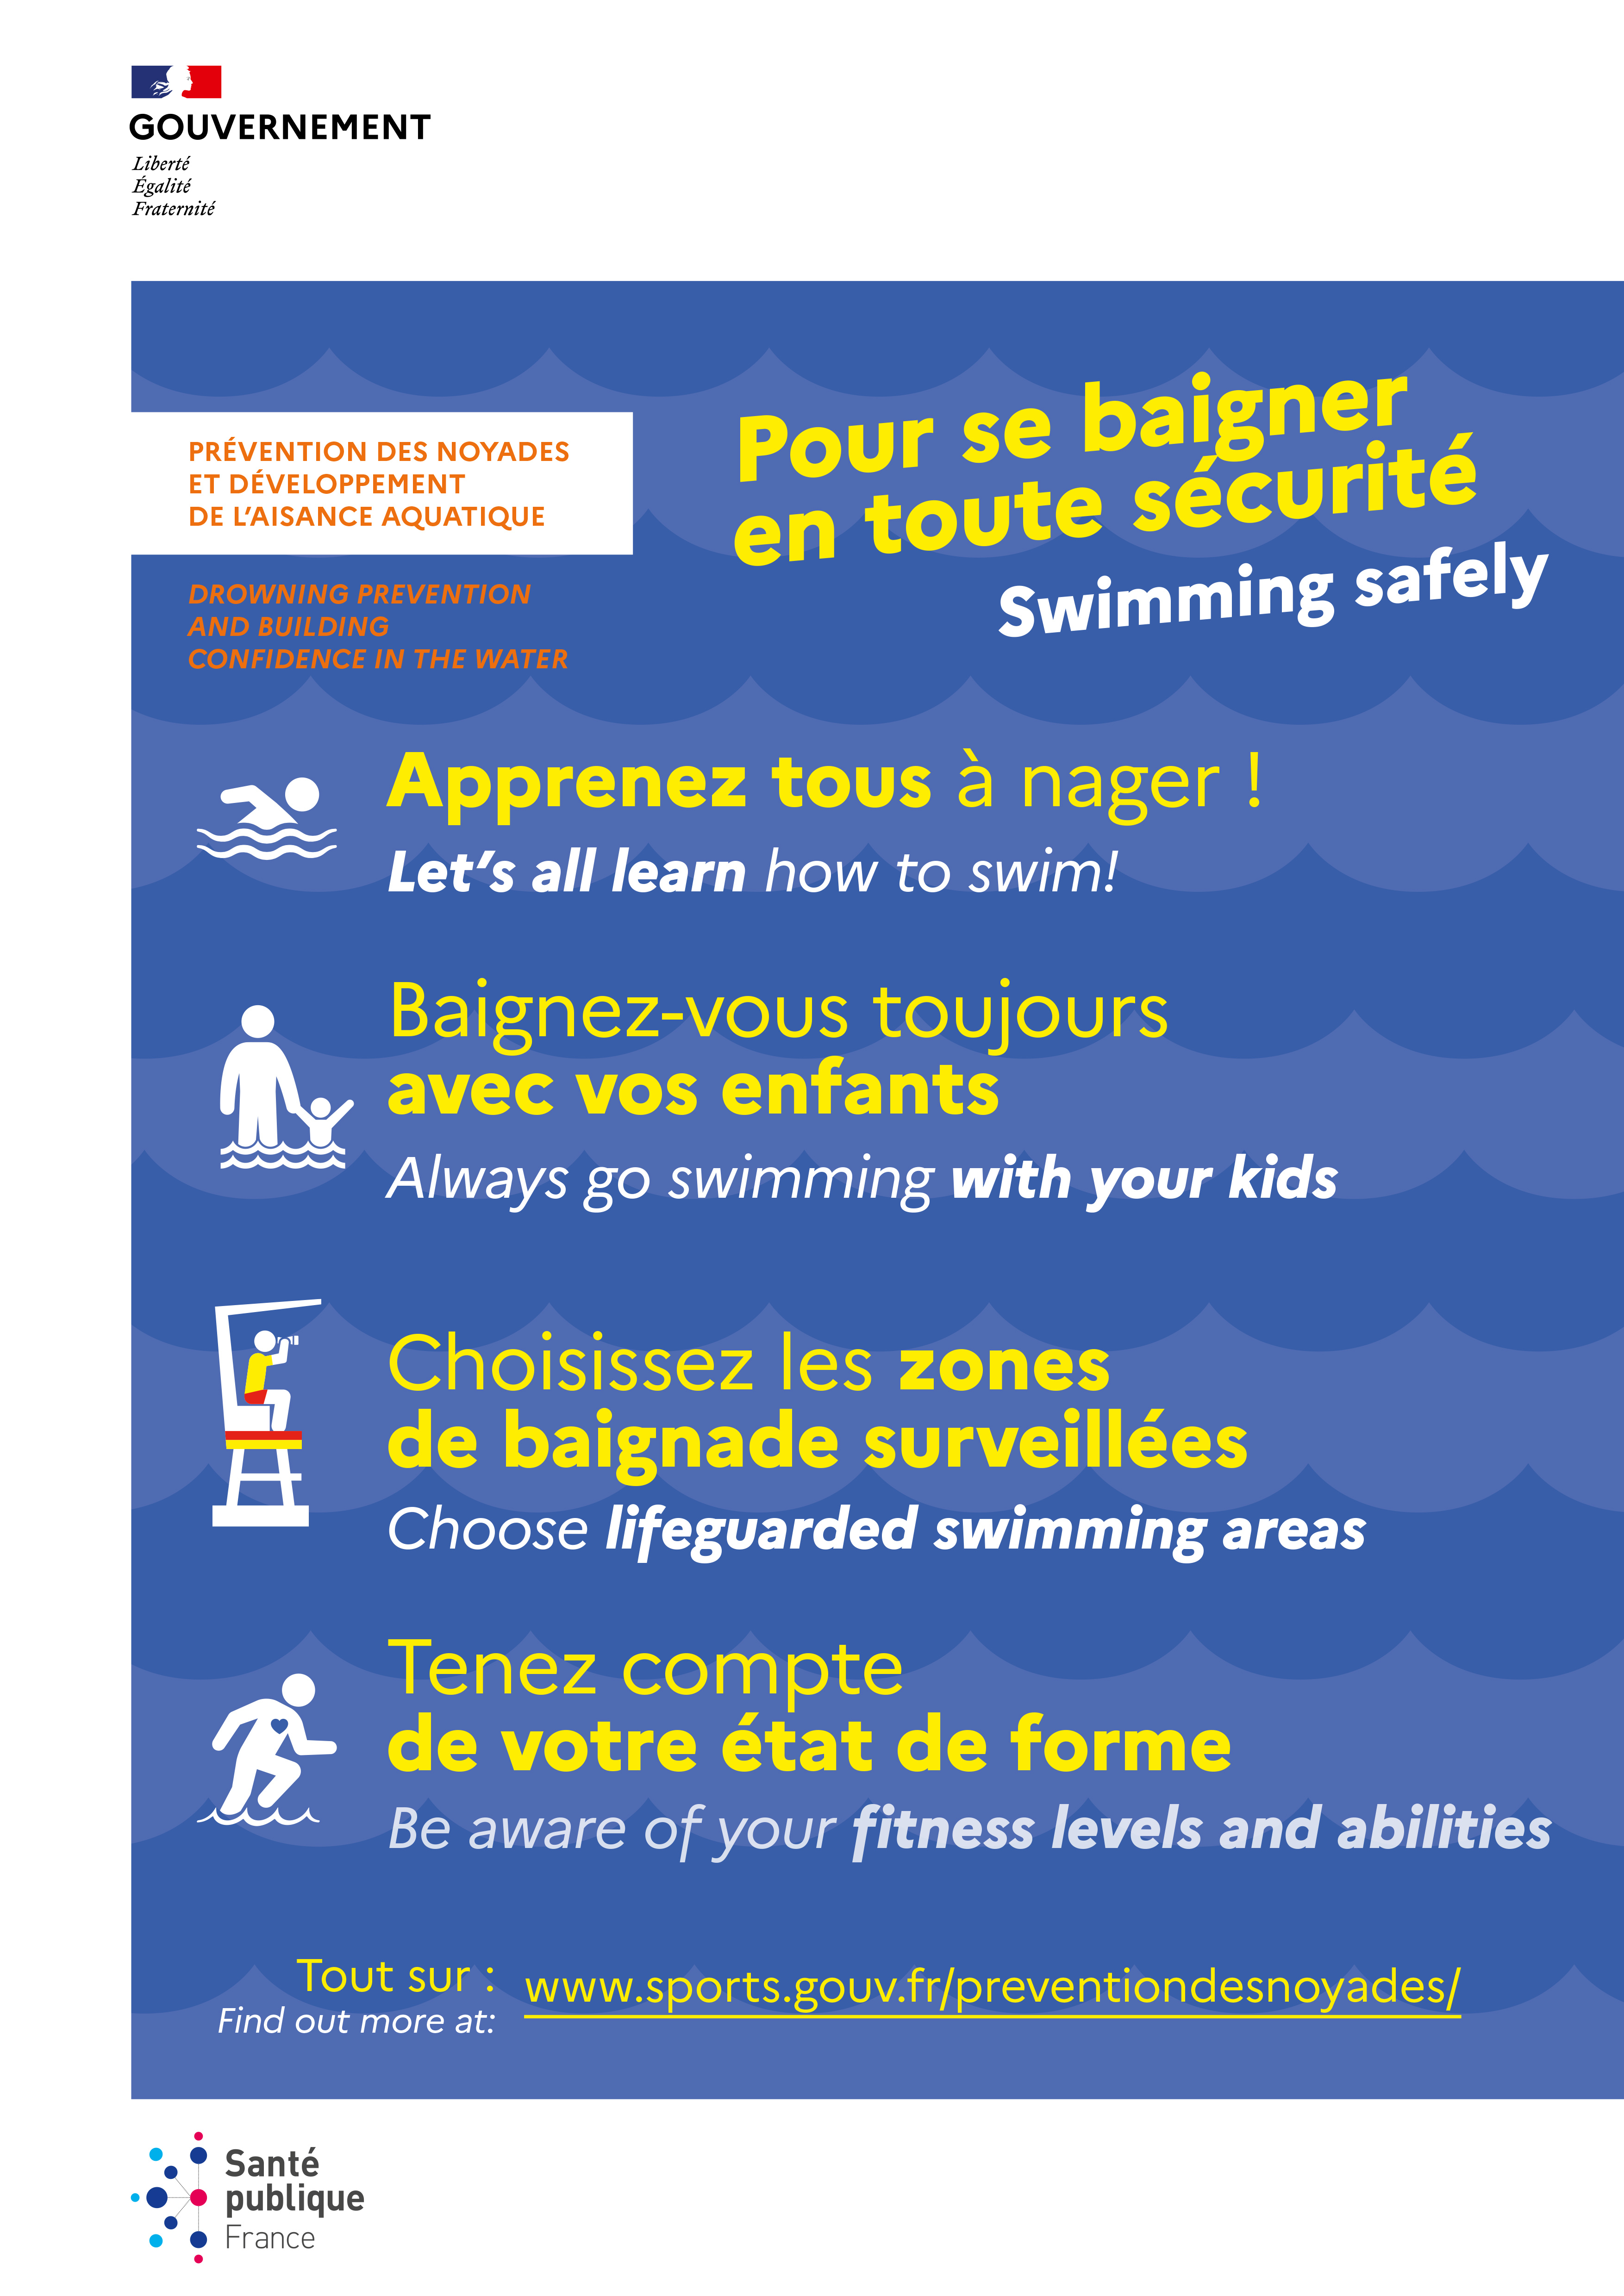 Les conseils pour se baigner en toute sécurité : apprenez tous à nager ; baignez vous toujours avec vos enfants  choisissez les zones de baignade surveillées et tenez compte de votre état de forme. 